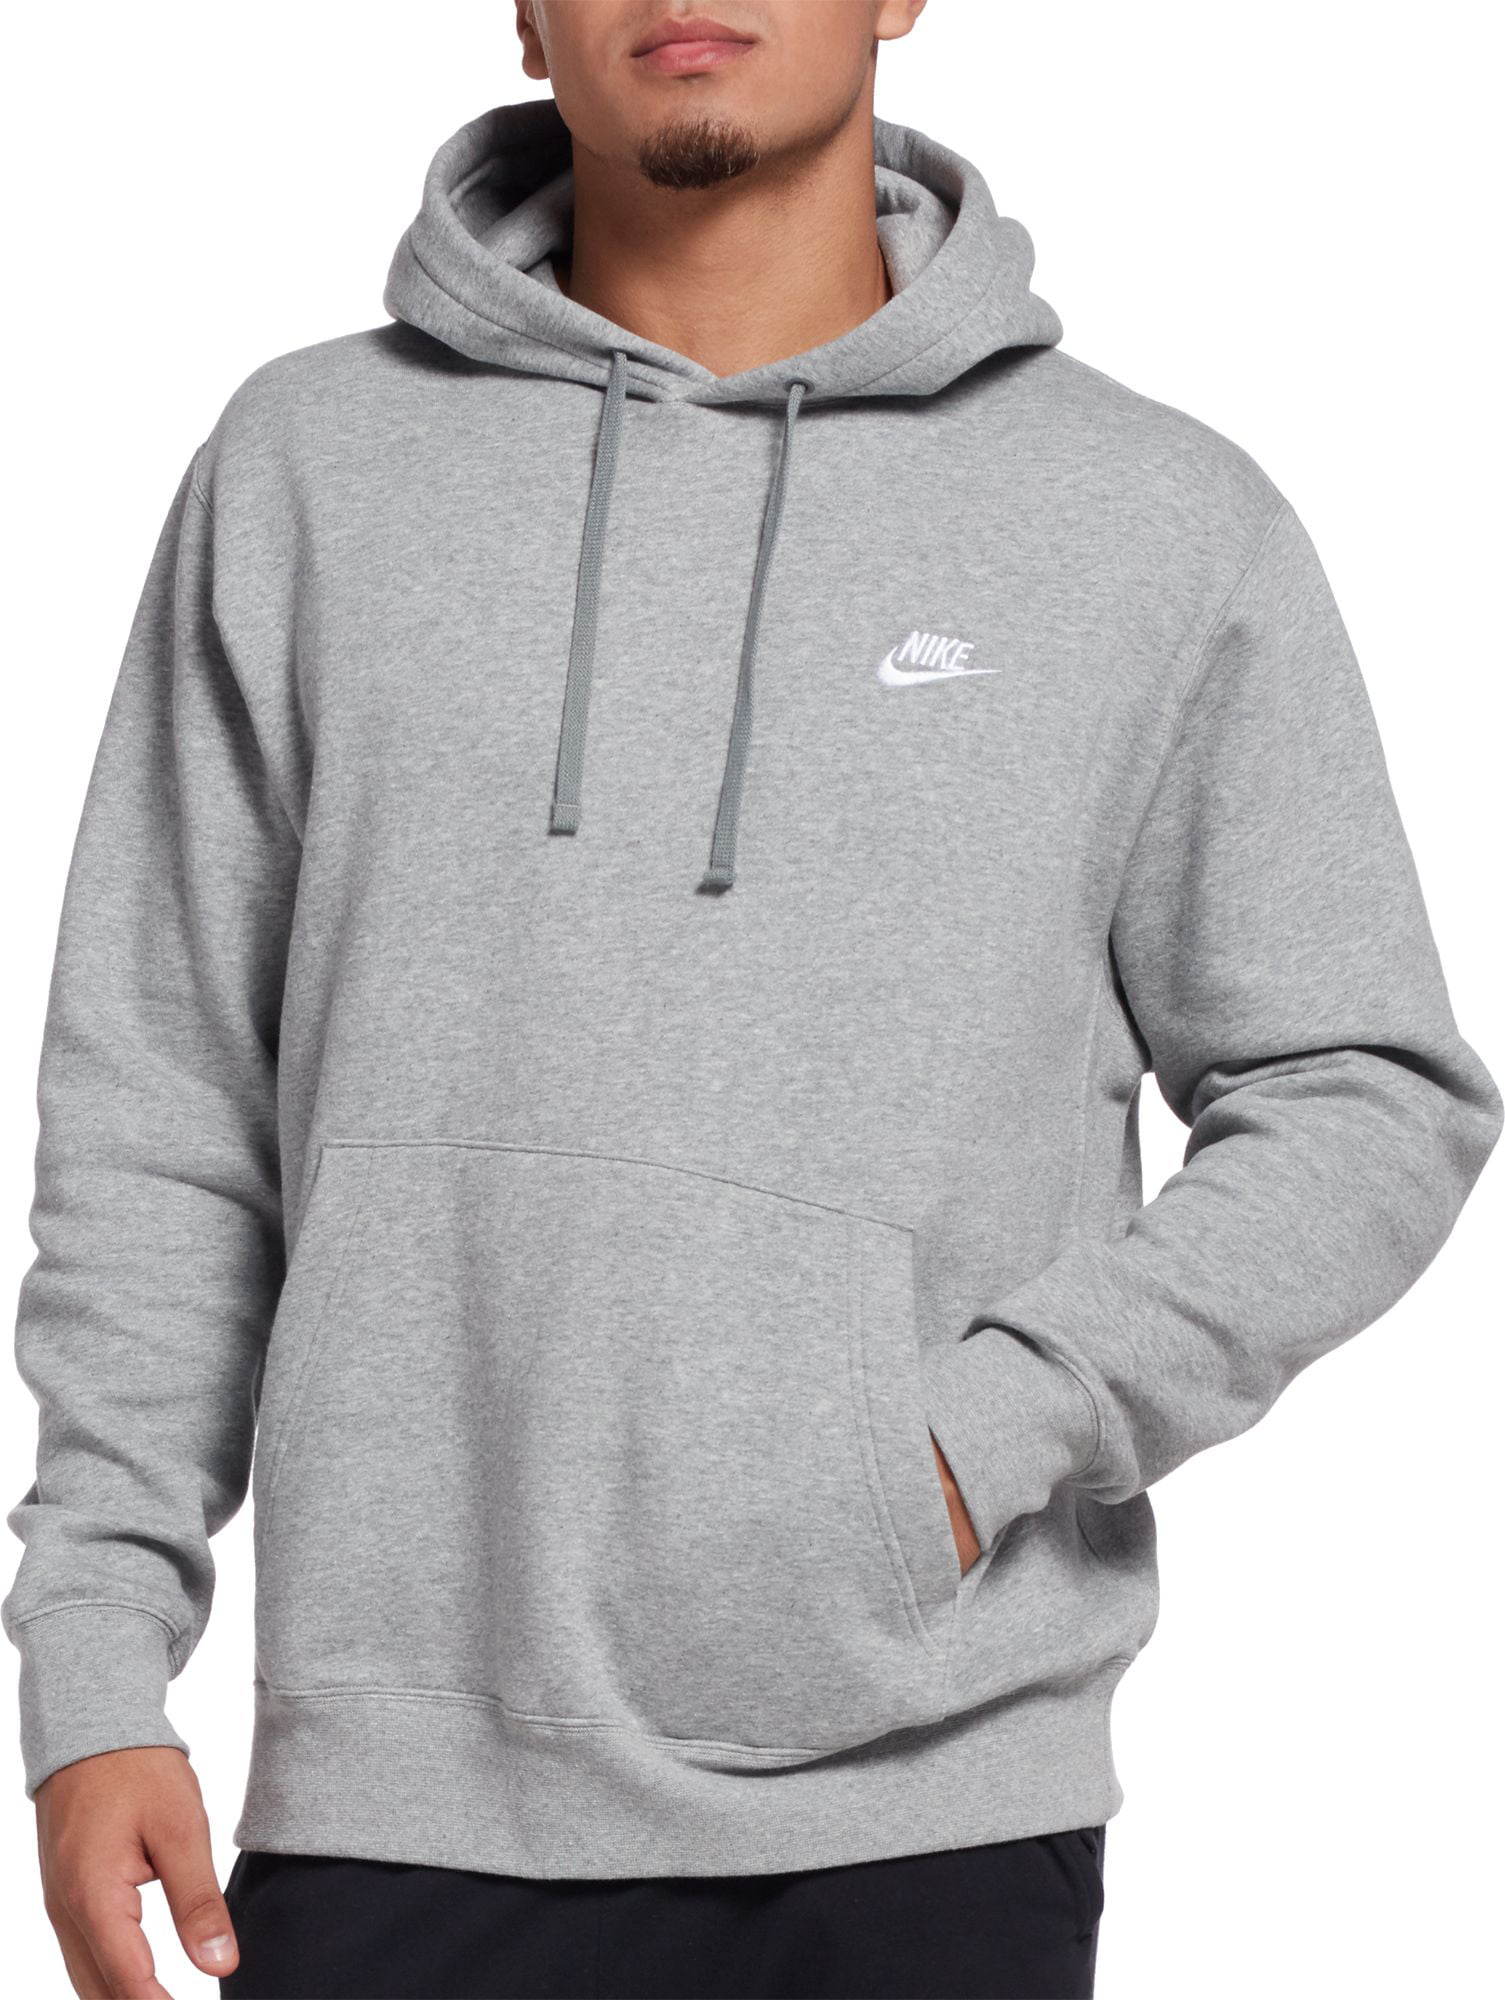 light grey nike hoodie mens